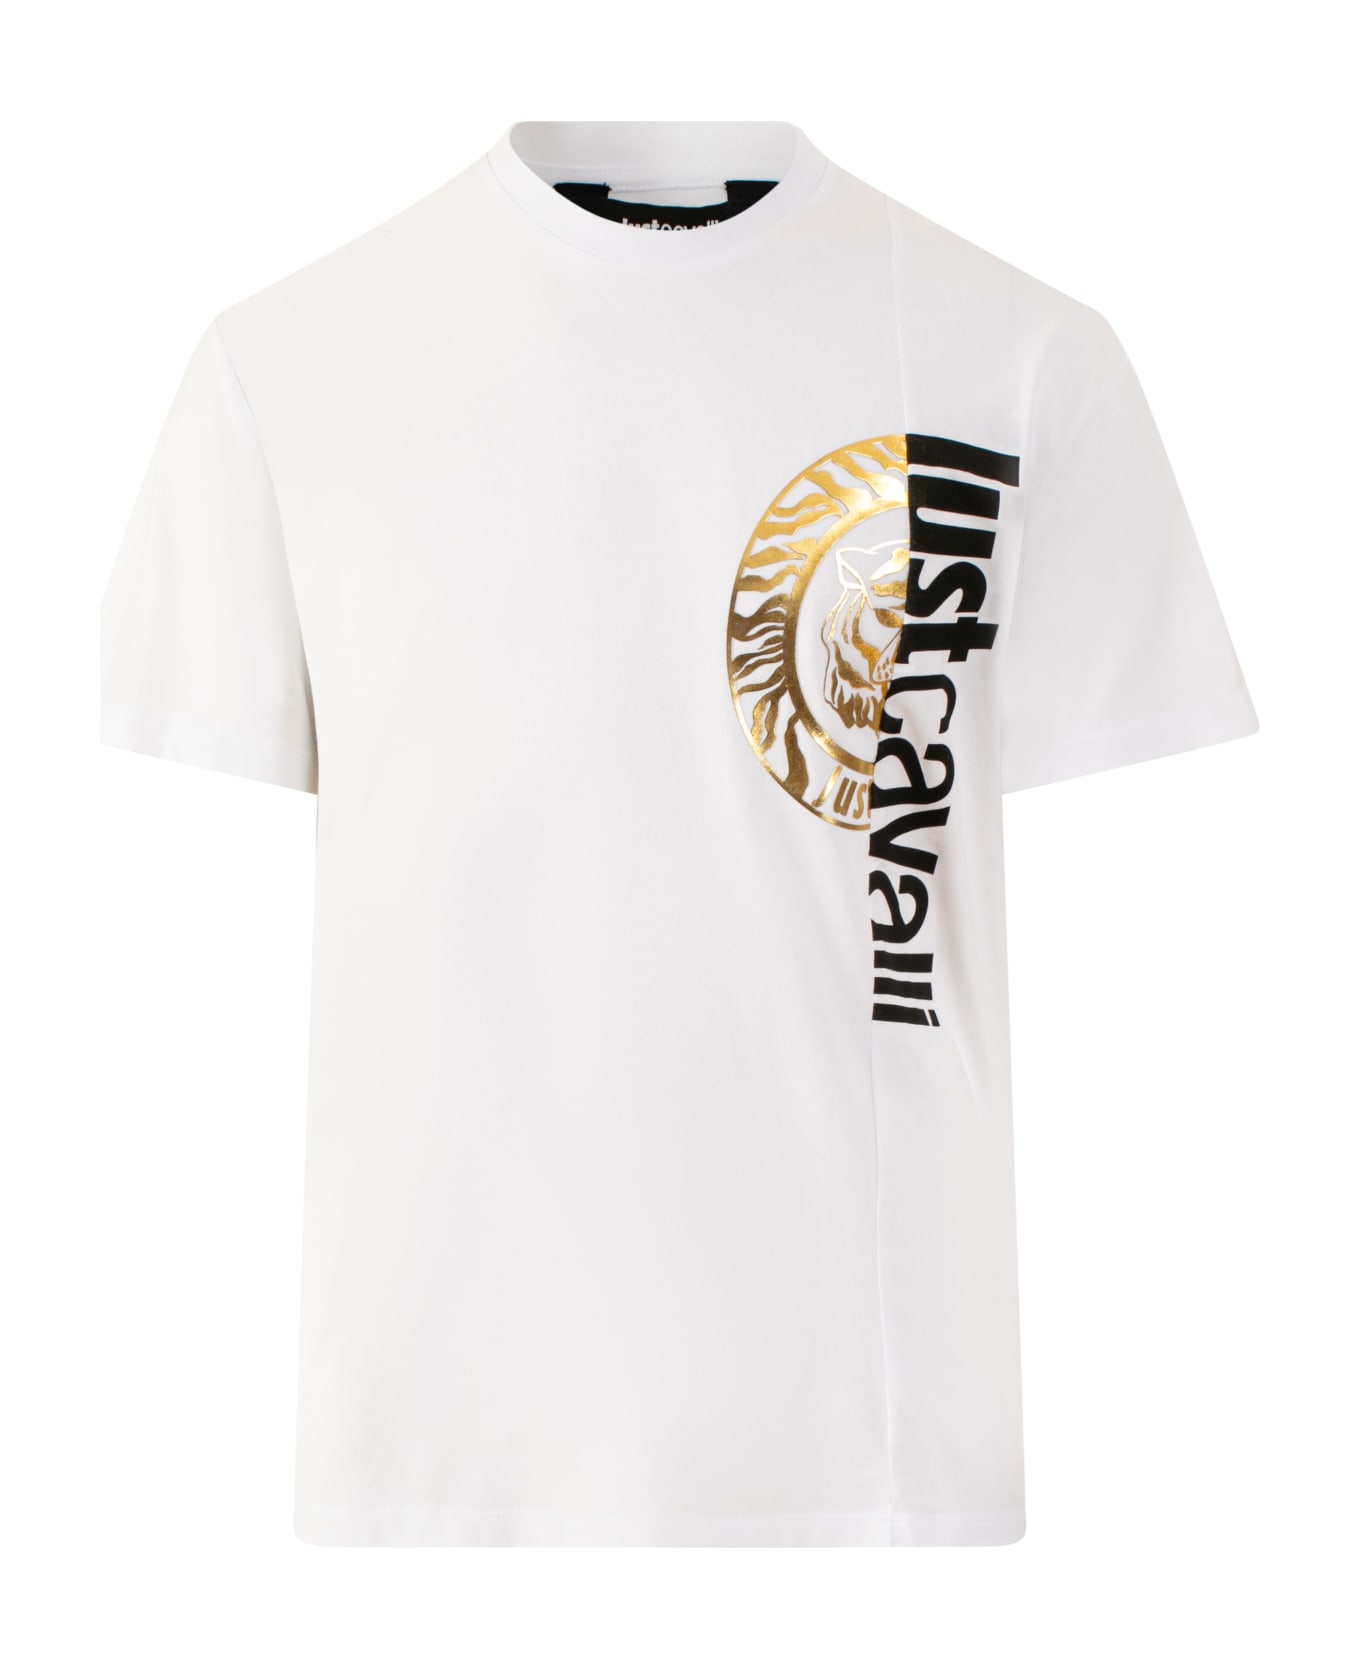 Just Cavalli T-shirt - White